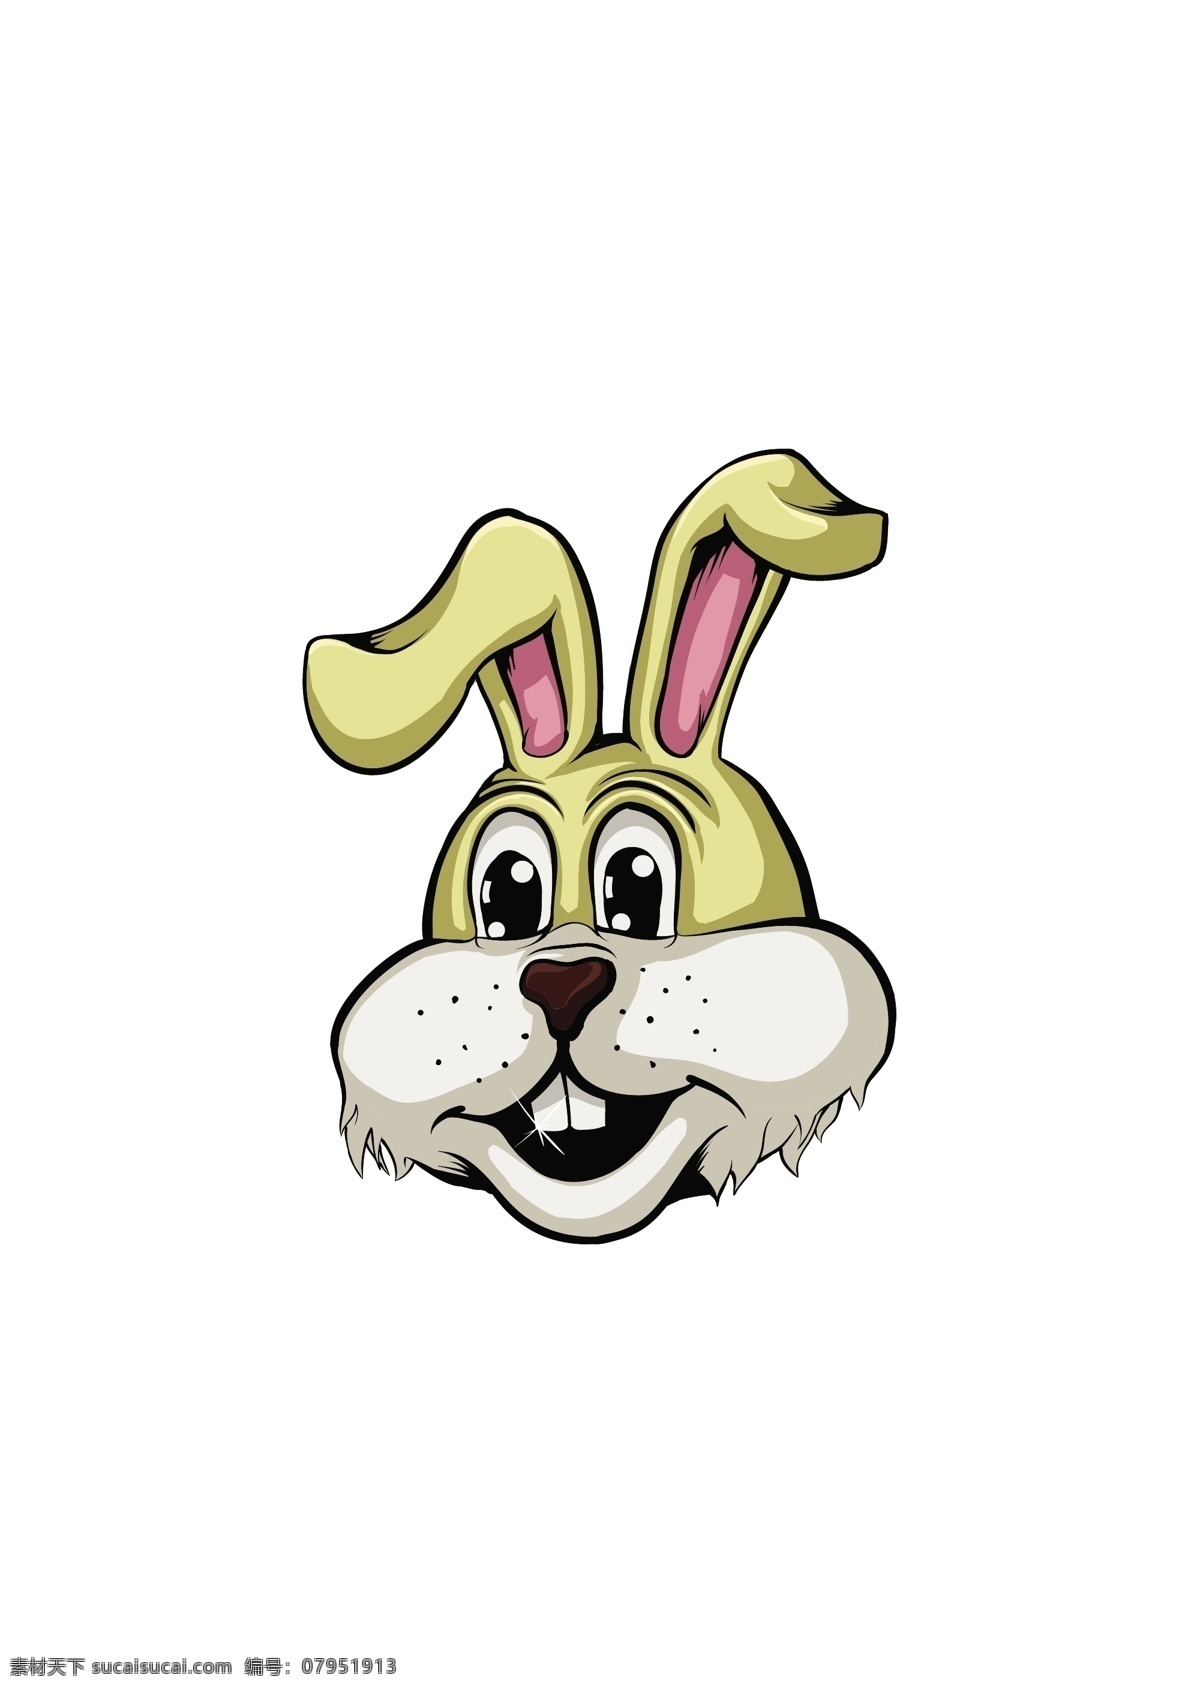 创意 可爱 卡通 动物 头像 兔子 宠物 野兽 大灰狼 狼 狗 背景 酷 戴眼镜的 卡通人物 可爱卡通 时尚卡通设计 手绘 图标 商标 标志 logo 野生动物 保护动物 动物园 复古 分层 背景素材